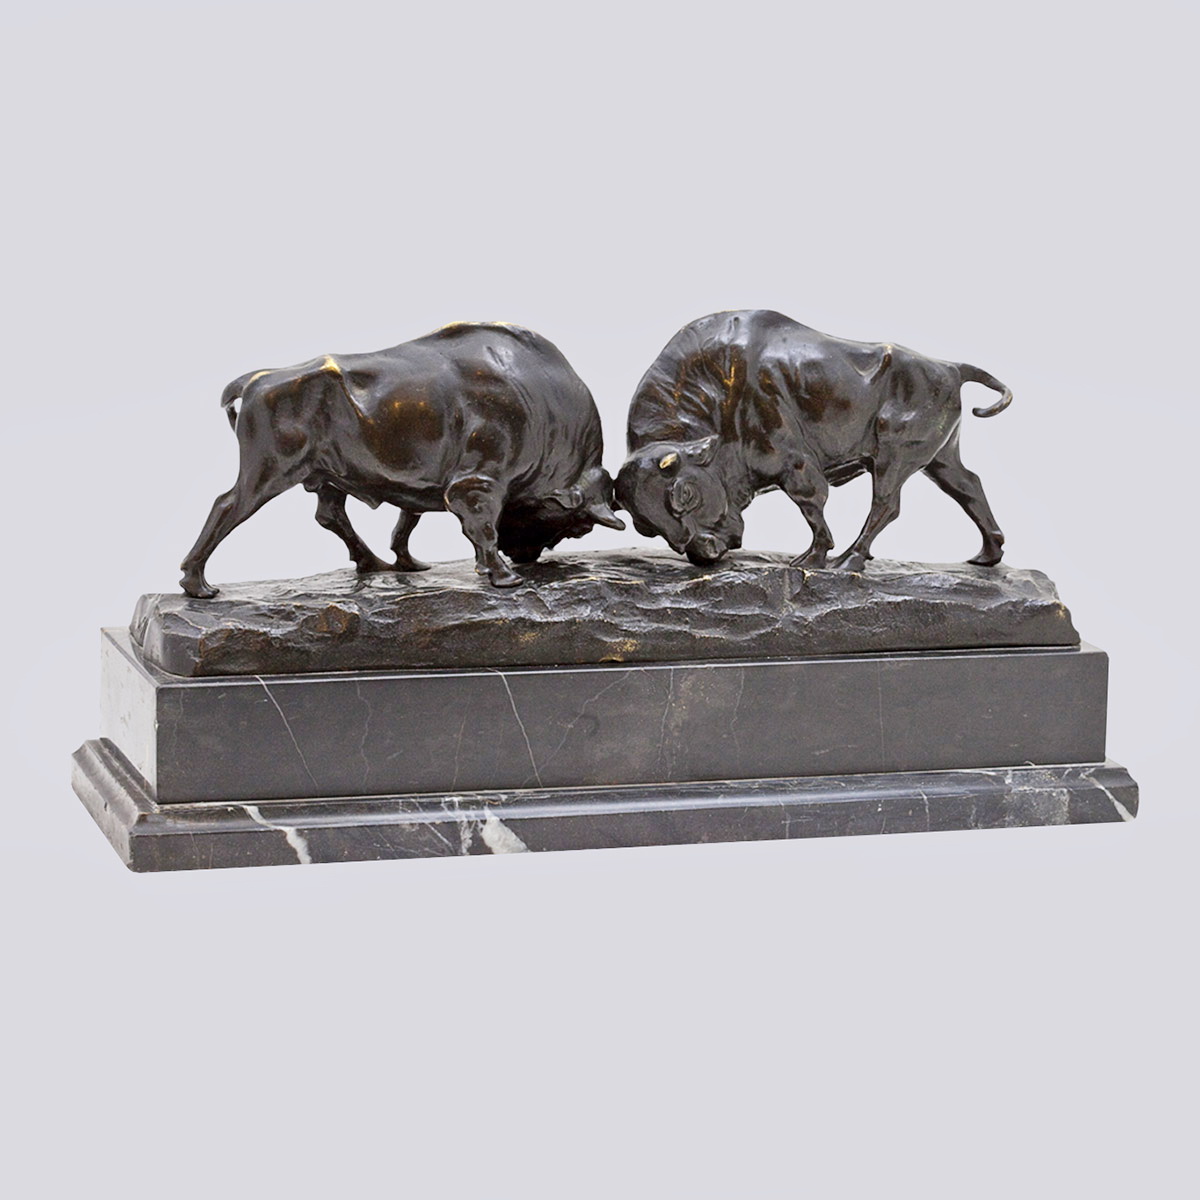 Скульптурная композиция «Поединок бизонов» из бронзы 20 века (Wille, Германия)